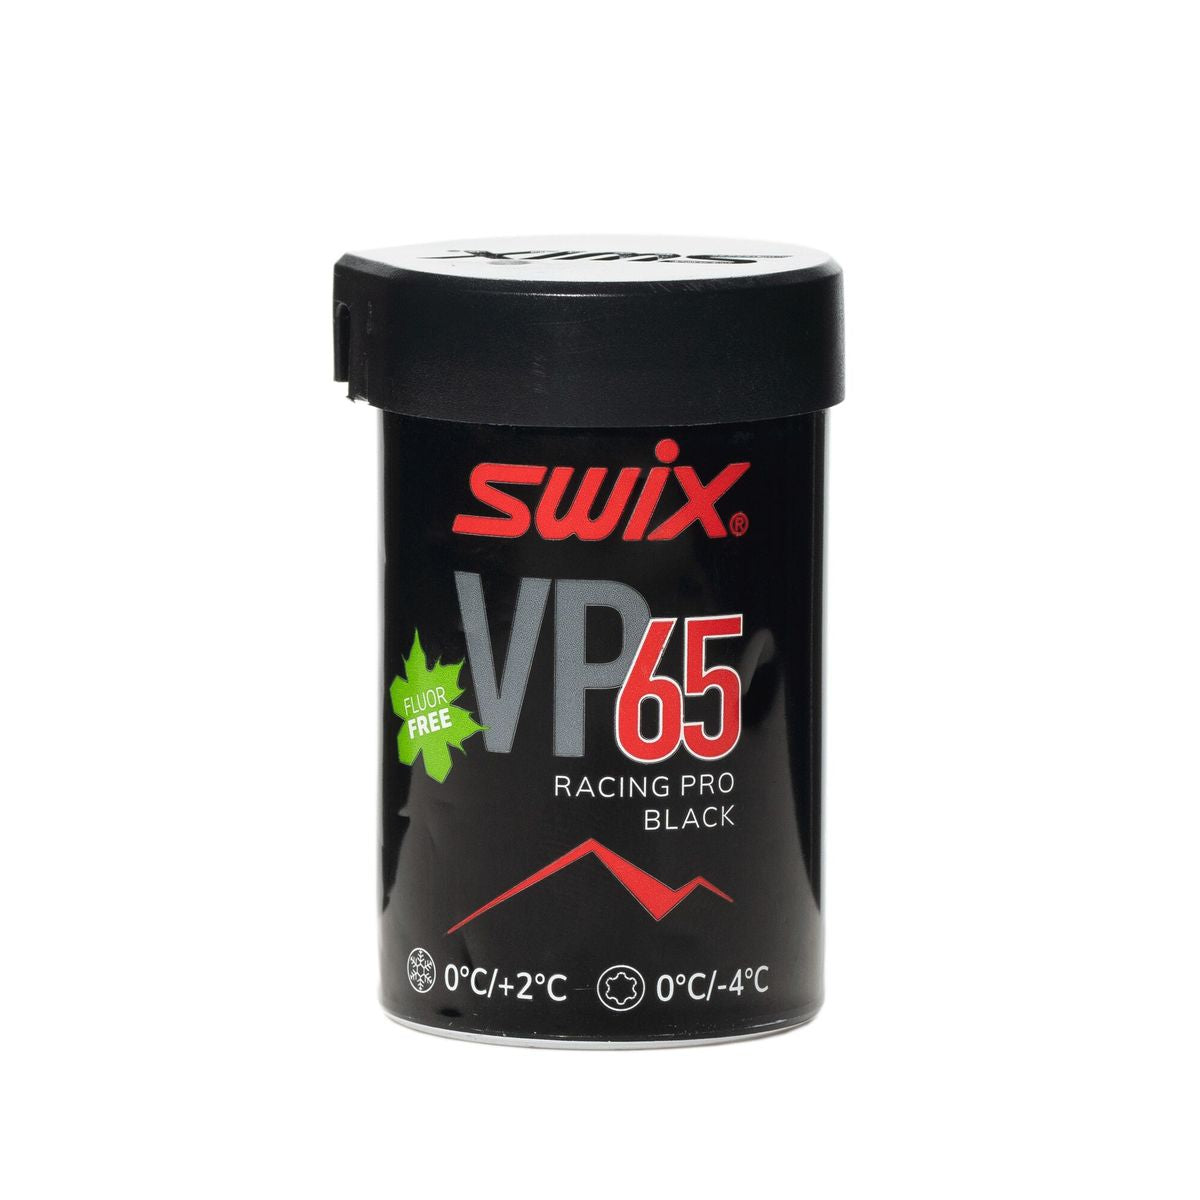 VP65 PRO Red-Black kick wax